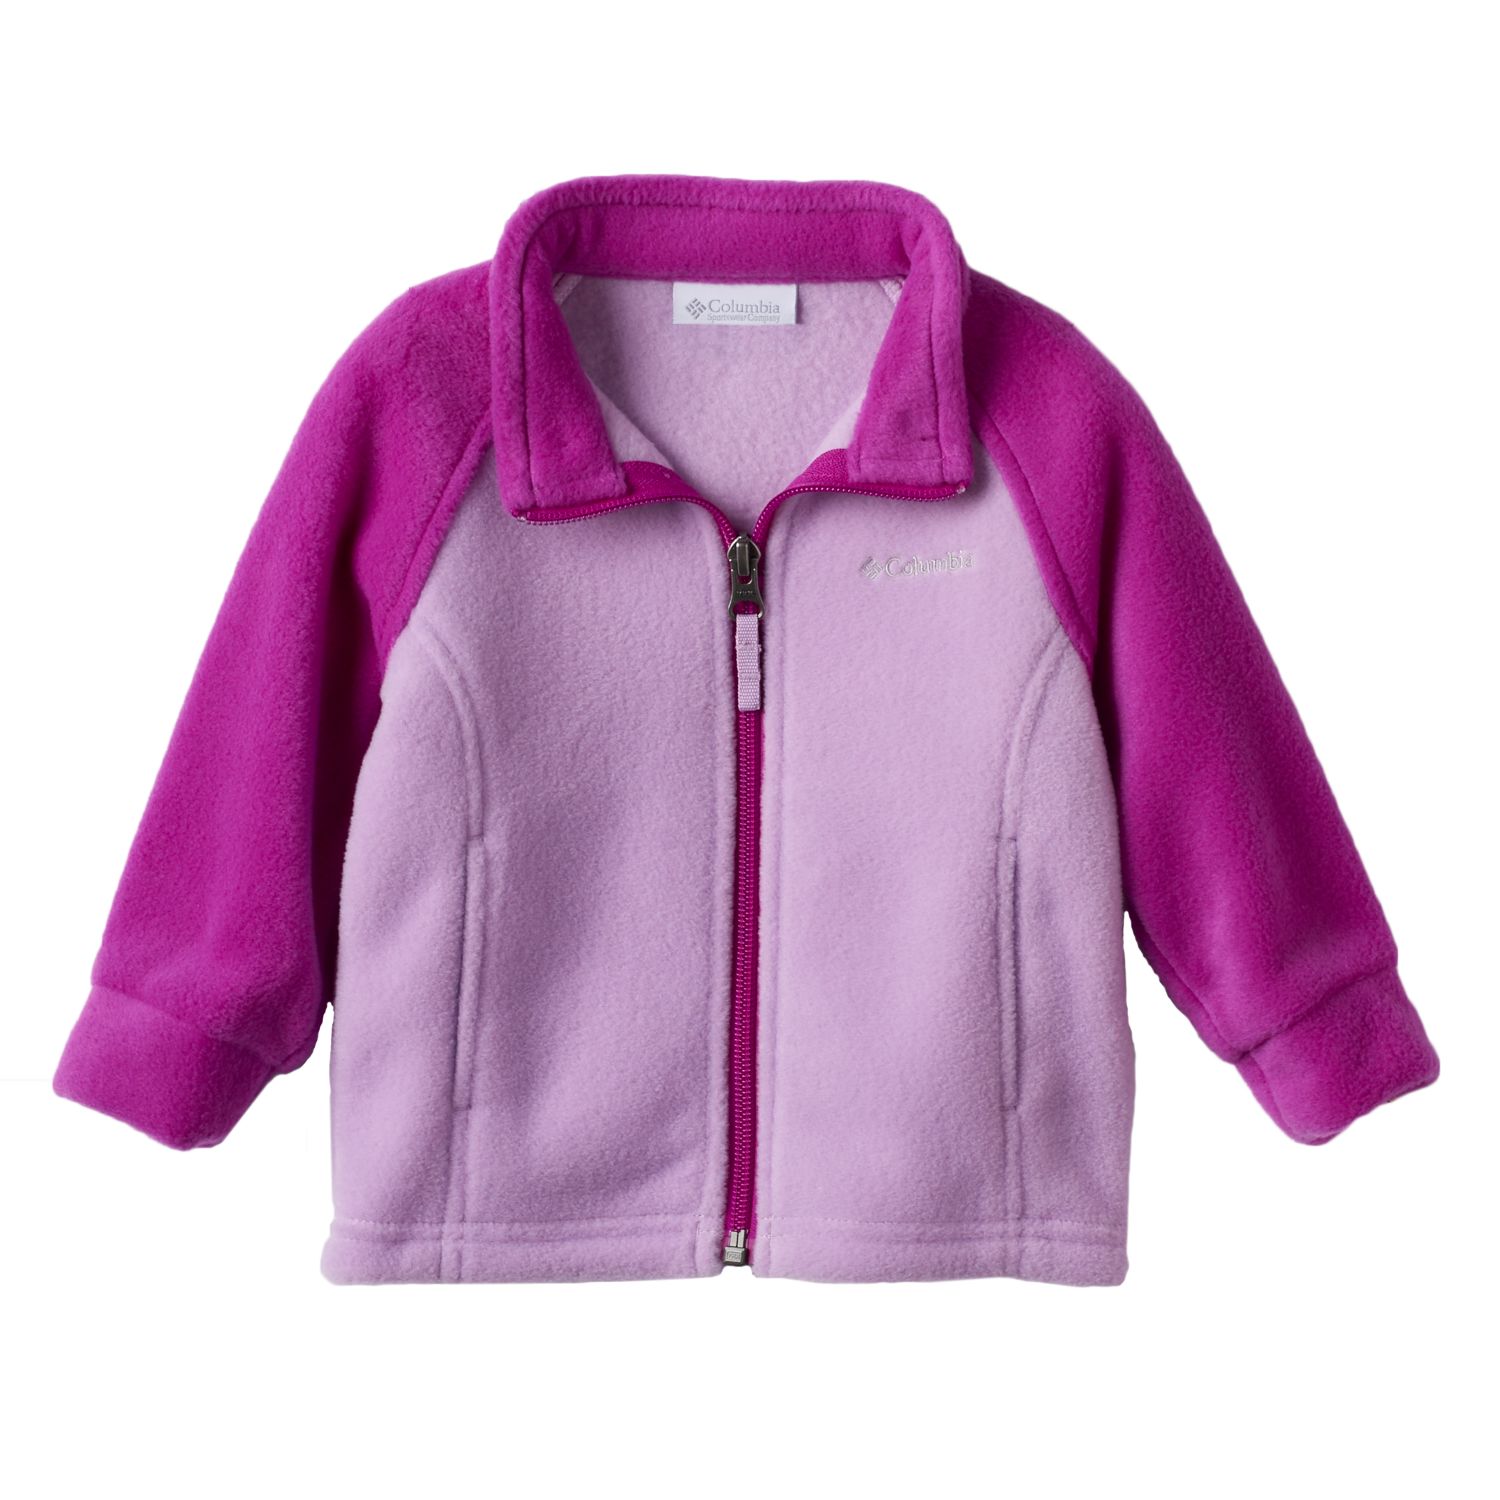 columbia fleece jacket toddler girl